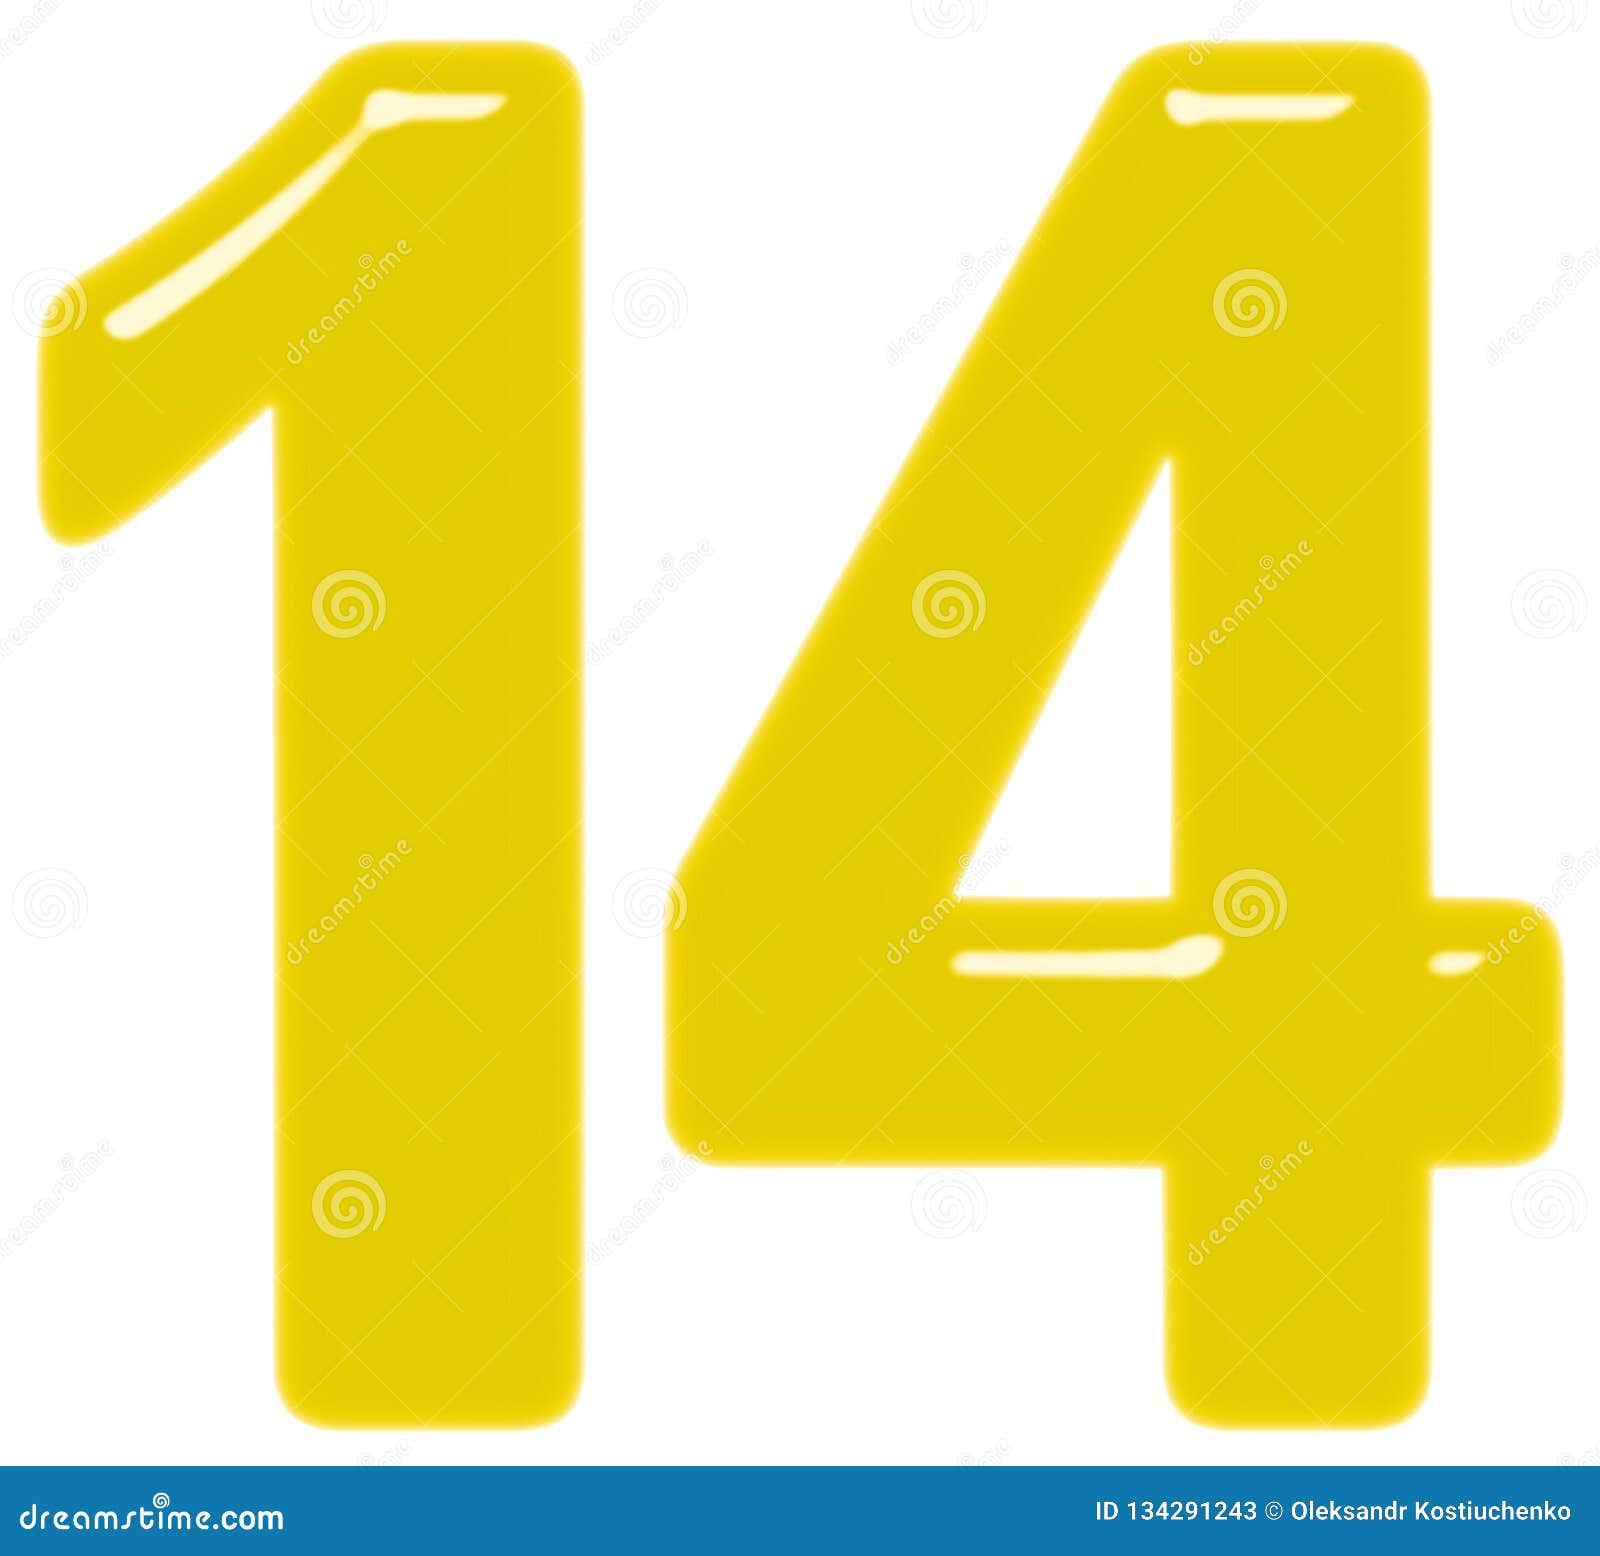 14. Цифра 14. Цифра 14 желтая. Цифра 14 на фоне. Цифра 14 трафарет.